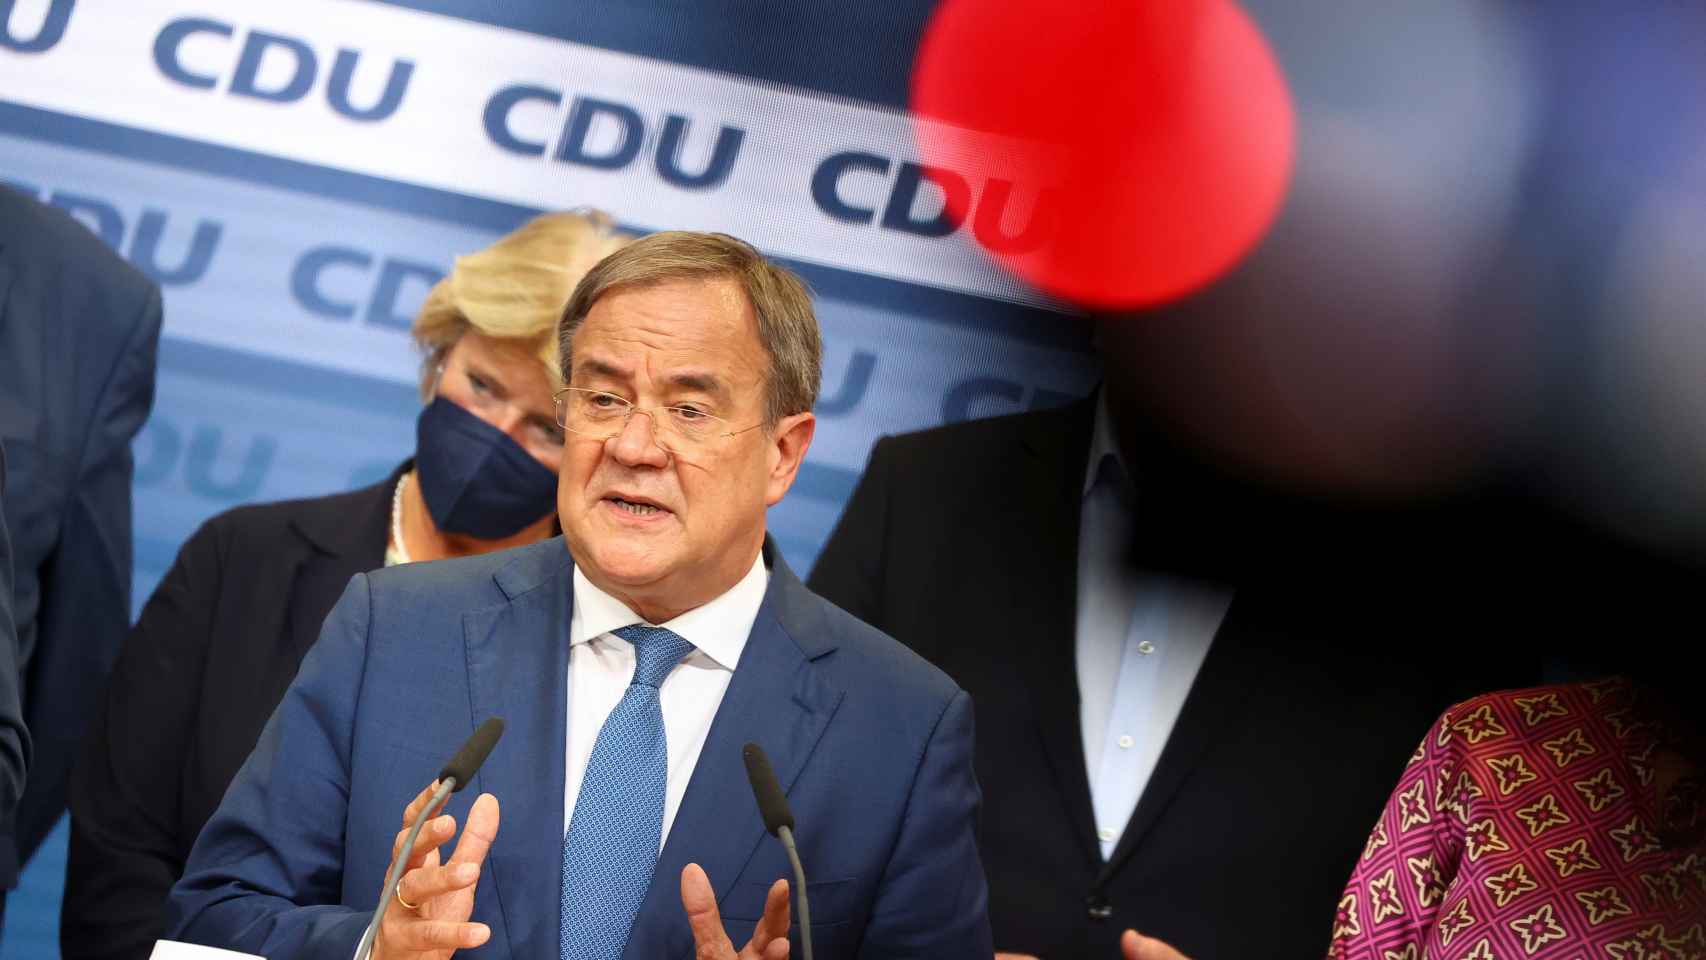 El candidato de la CDU, Armin Laschet, durante el recuento en Alemania.